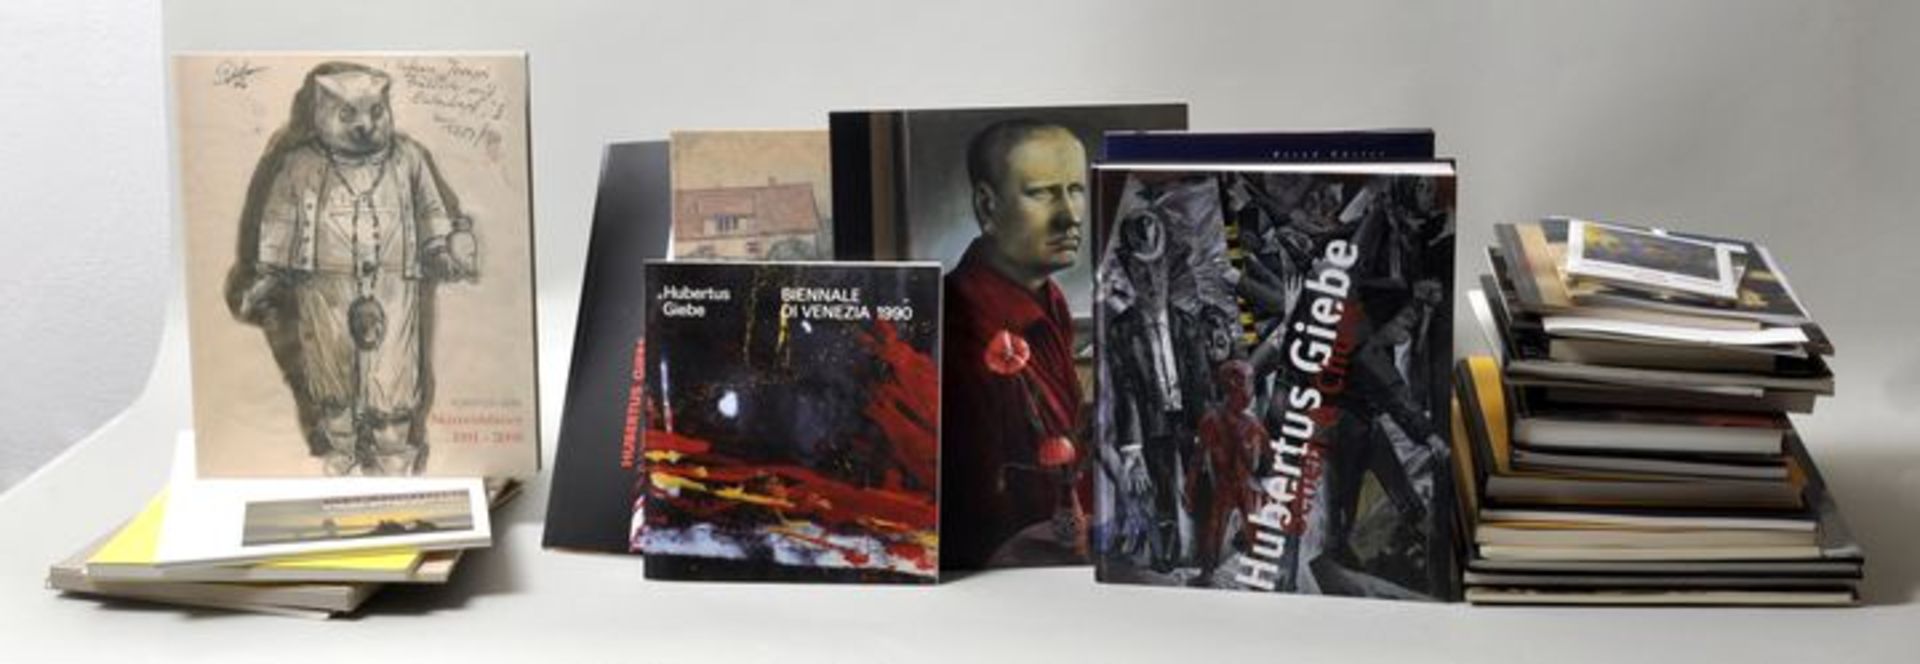 Kunstliteratur Hubertus GiebeKonvolut von 33 Publikationen zum Werk des Dresdner Künstlers